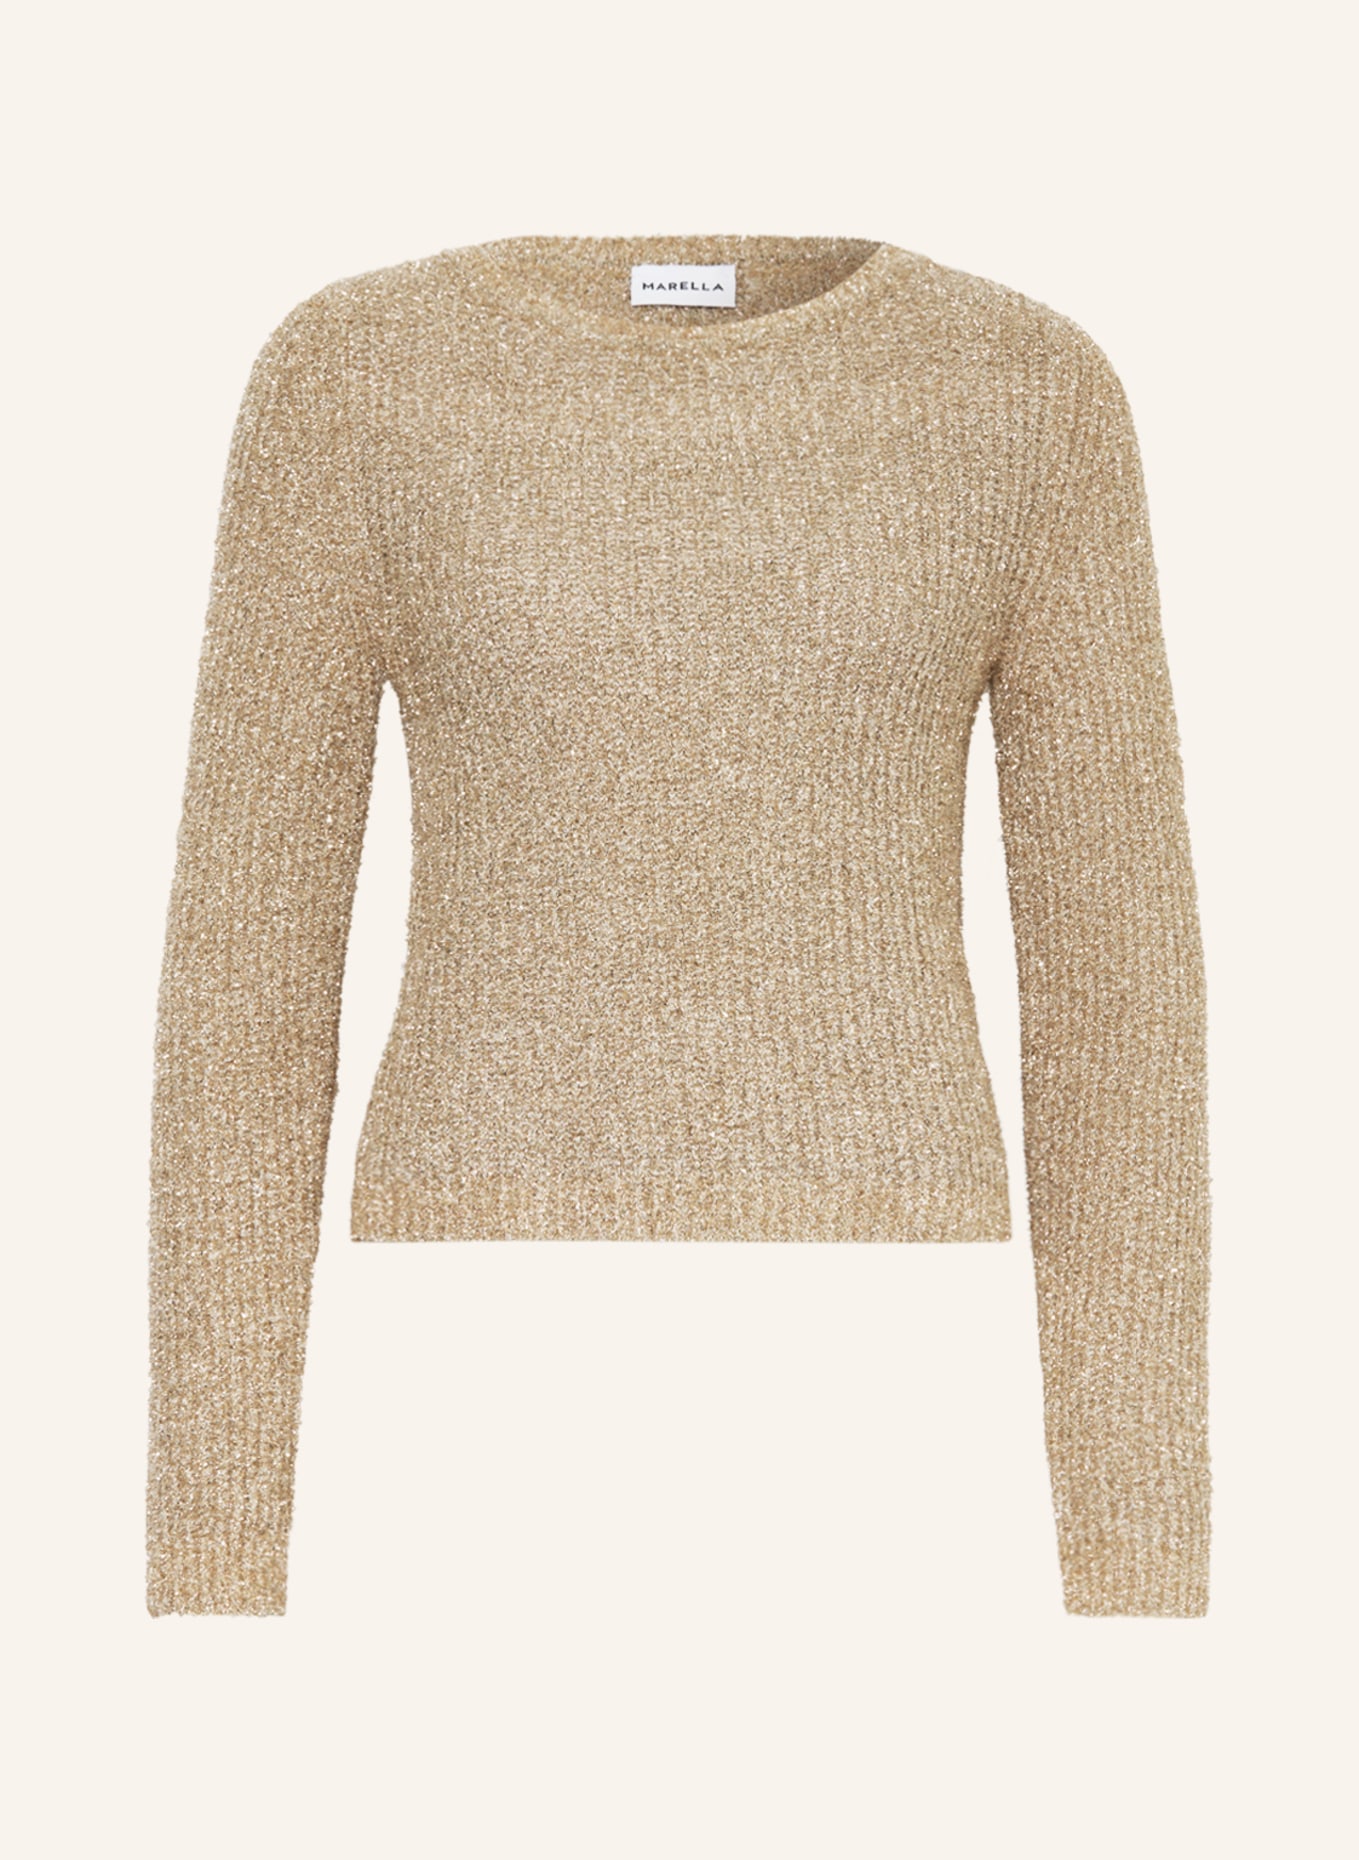 MARELLA Sweater CAPO with glitter thread, Color: GOLD (Image 1)